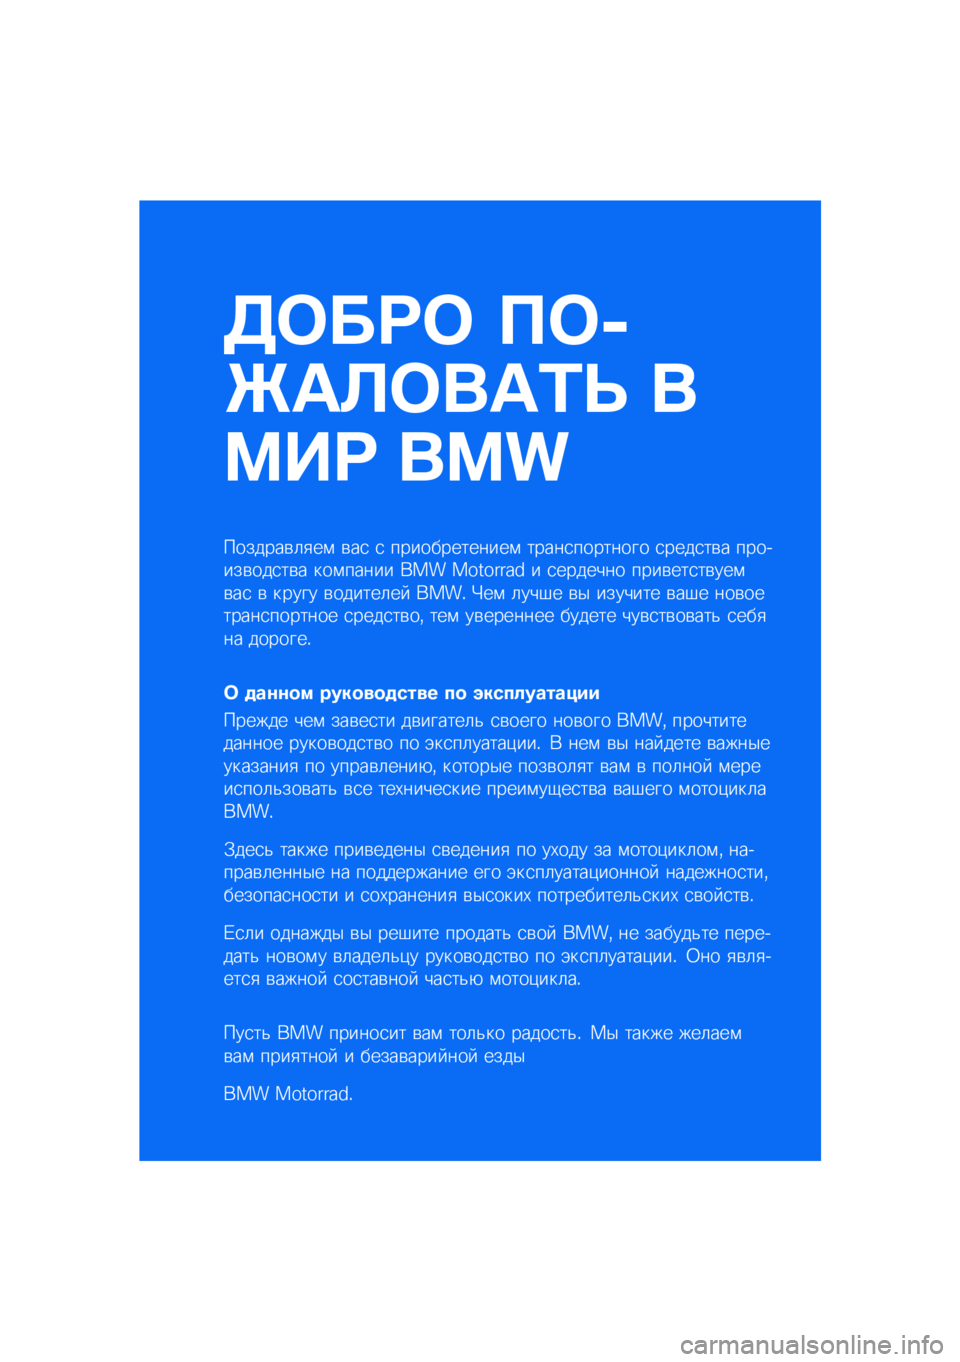 BMW MOTORRAD K 1600 B 2020  Руководство по эксплуатации (in Russian) ����� ���
�\b�	�
���	�\f�
 �
��� ���
�������\b�	�
��\f �\b��
 �
 �������������\f �����
�������� �
����
��\b� �������\b���
��\b� ���\f�